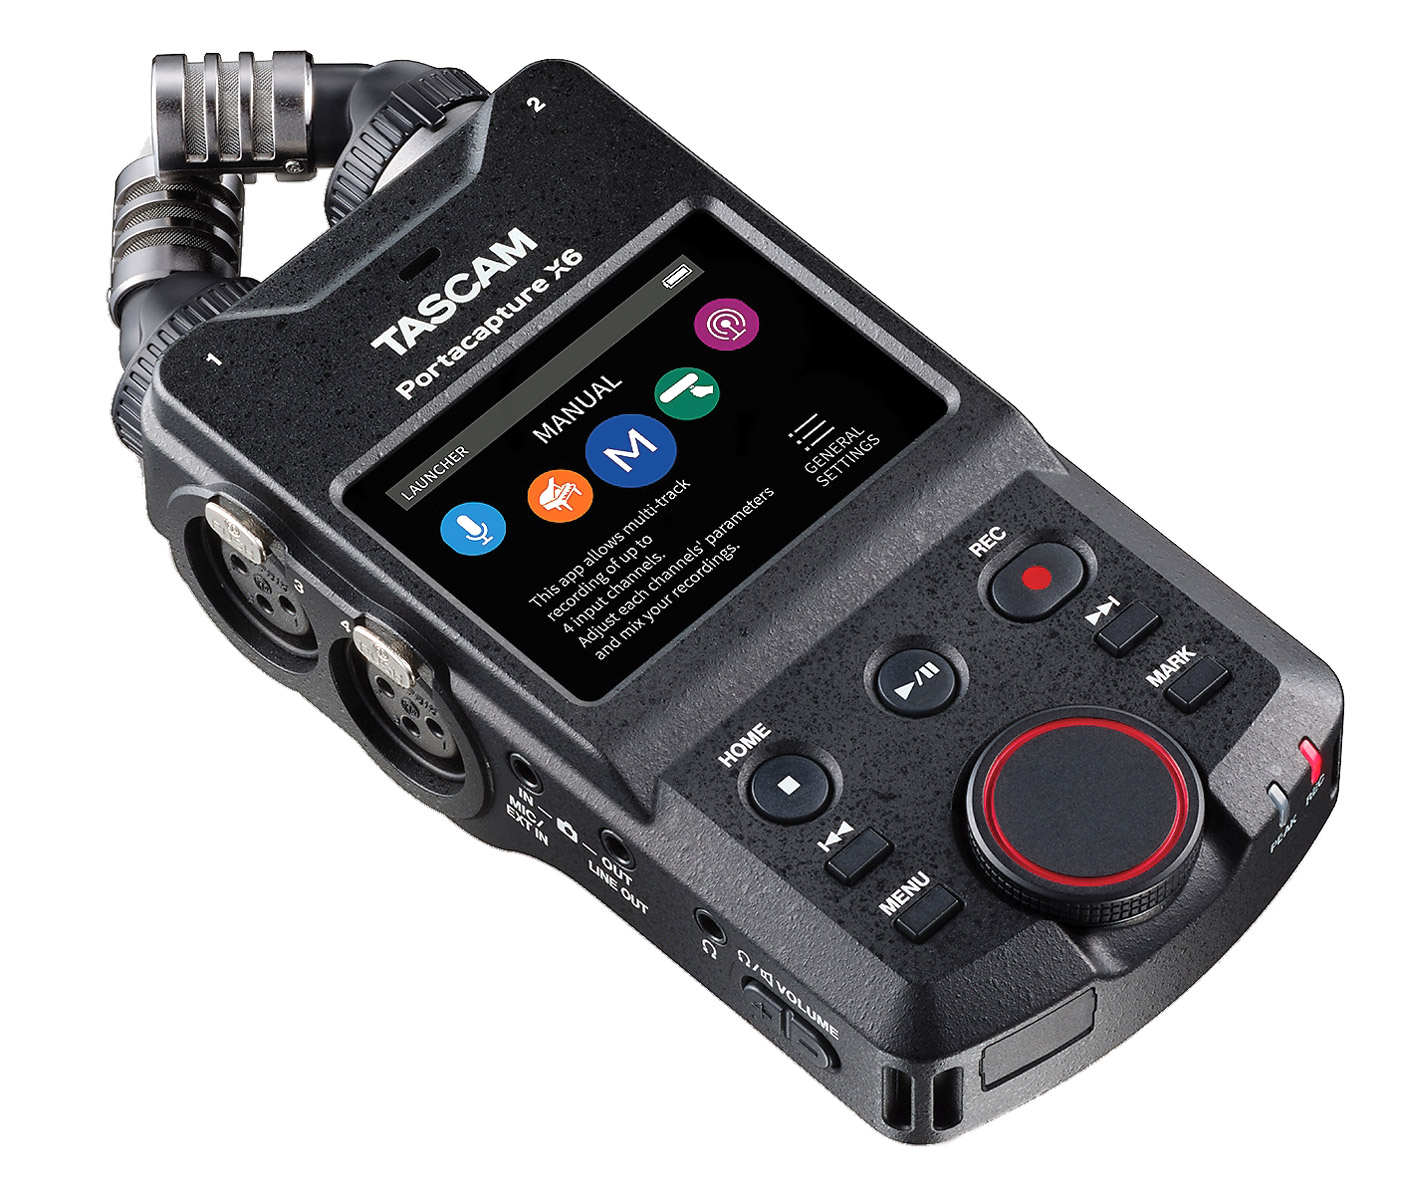 Tascam DR-100mkIII 192kHz/24-Bit Stereo Portable Audio Recorder for sale  online